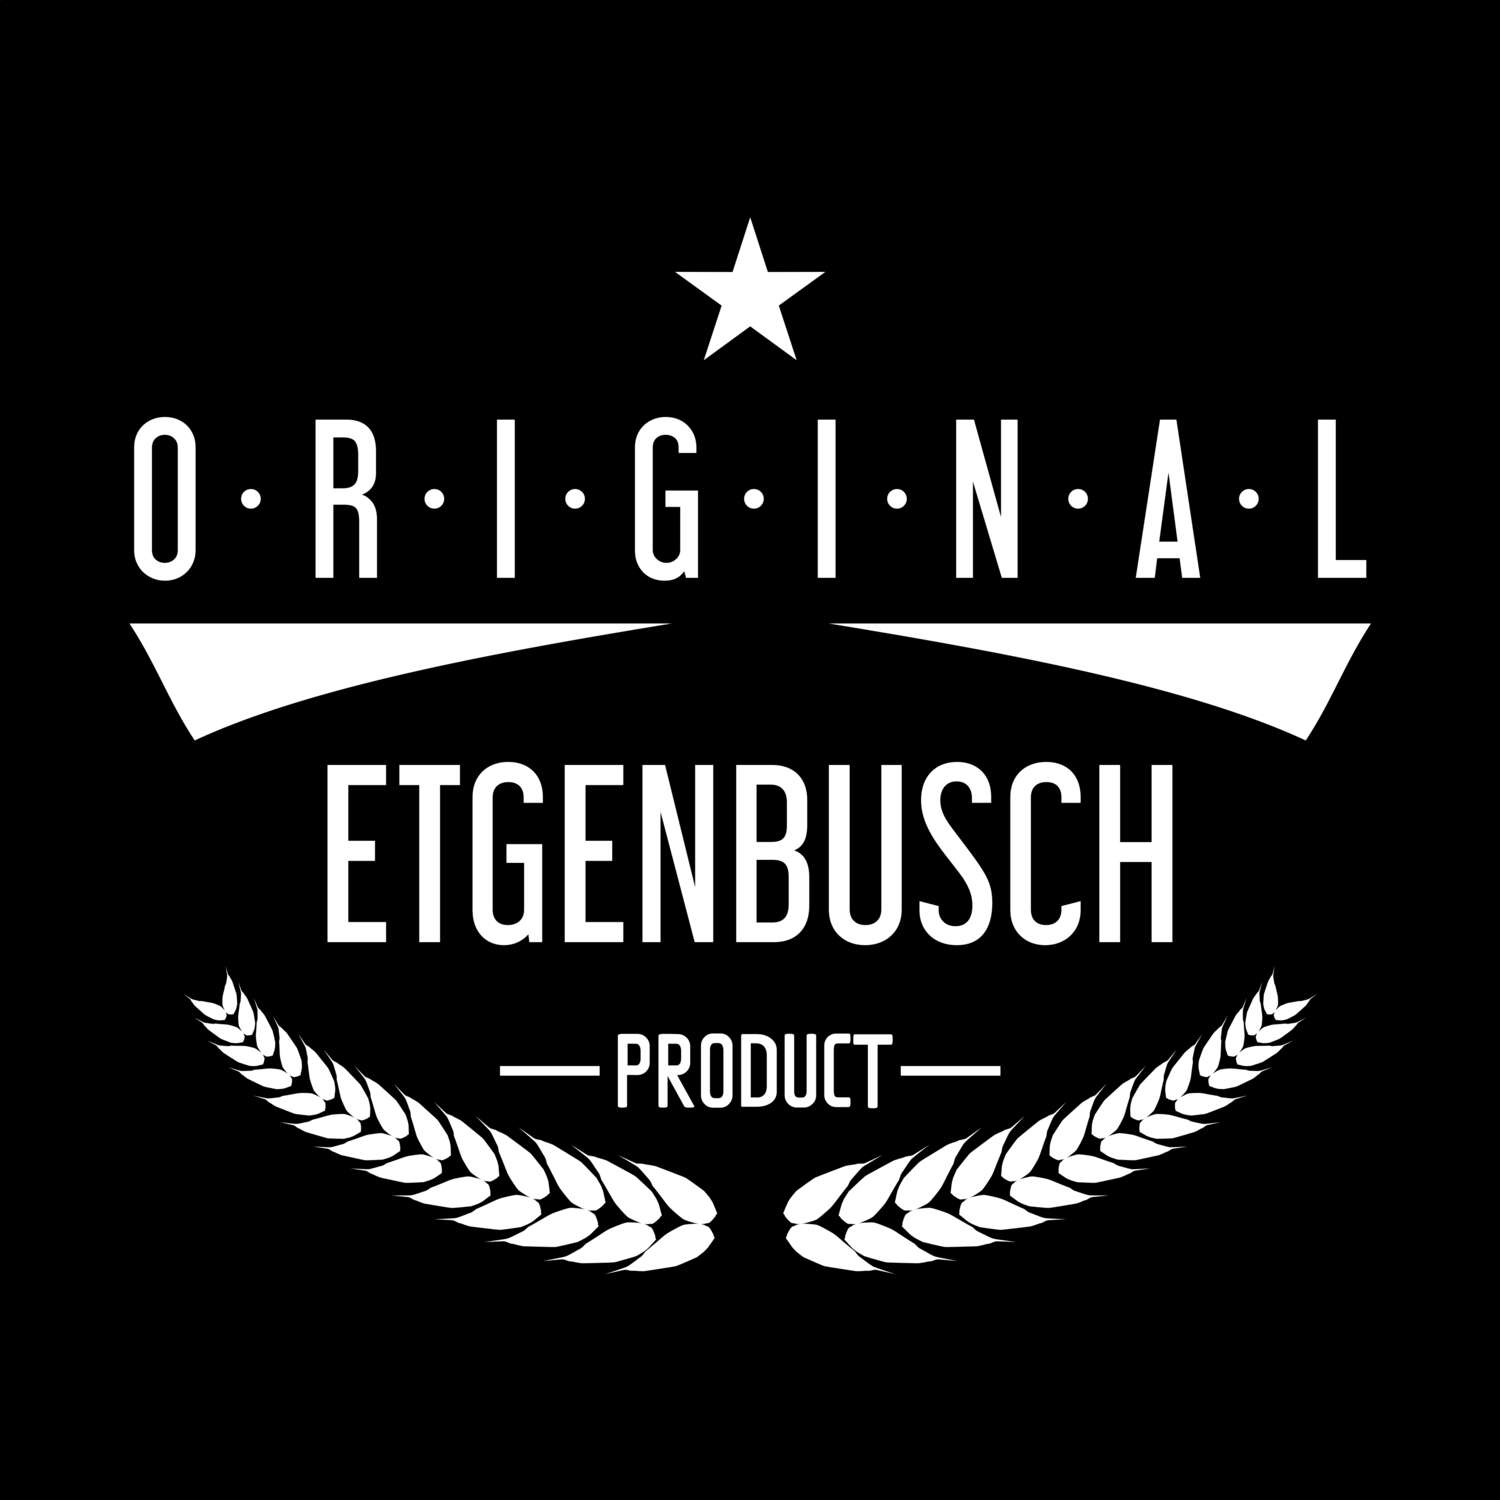 Etgenbusch T-Shirt »Original Product«